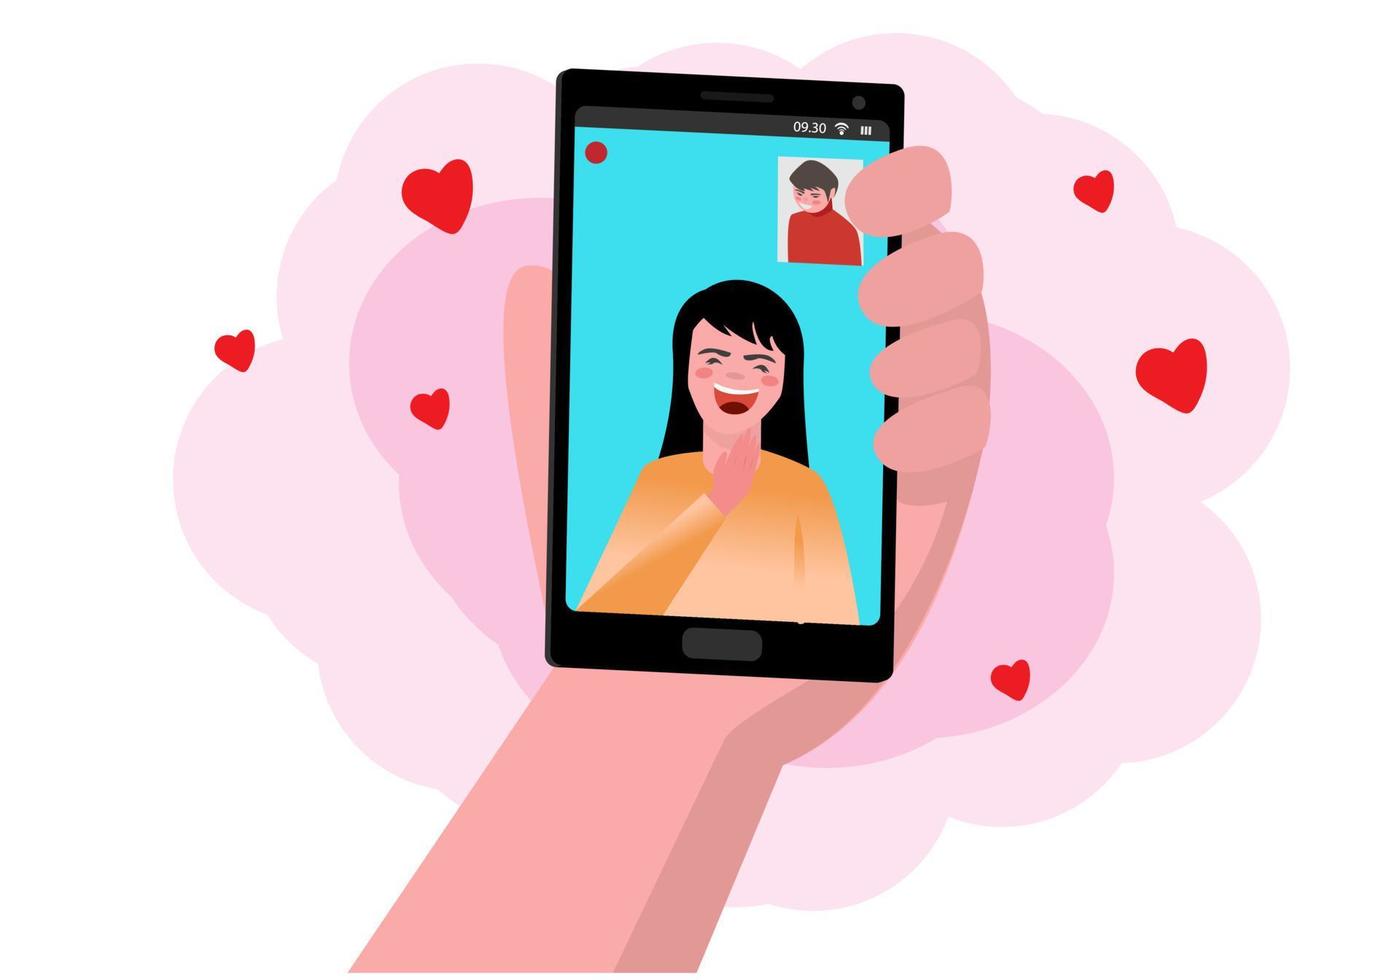 Haz videollamadas con tus seres queridos a través de tu smartphone. el concepto de amor a distancia a través de la tecnología. vector